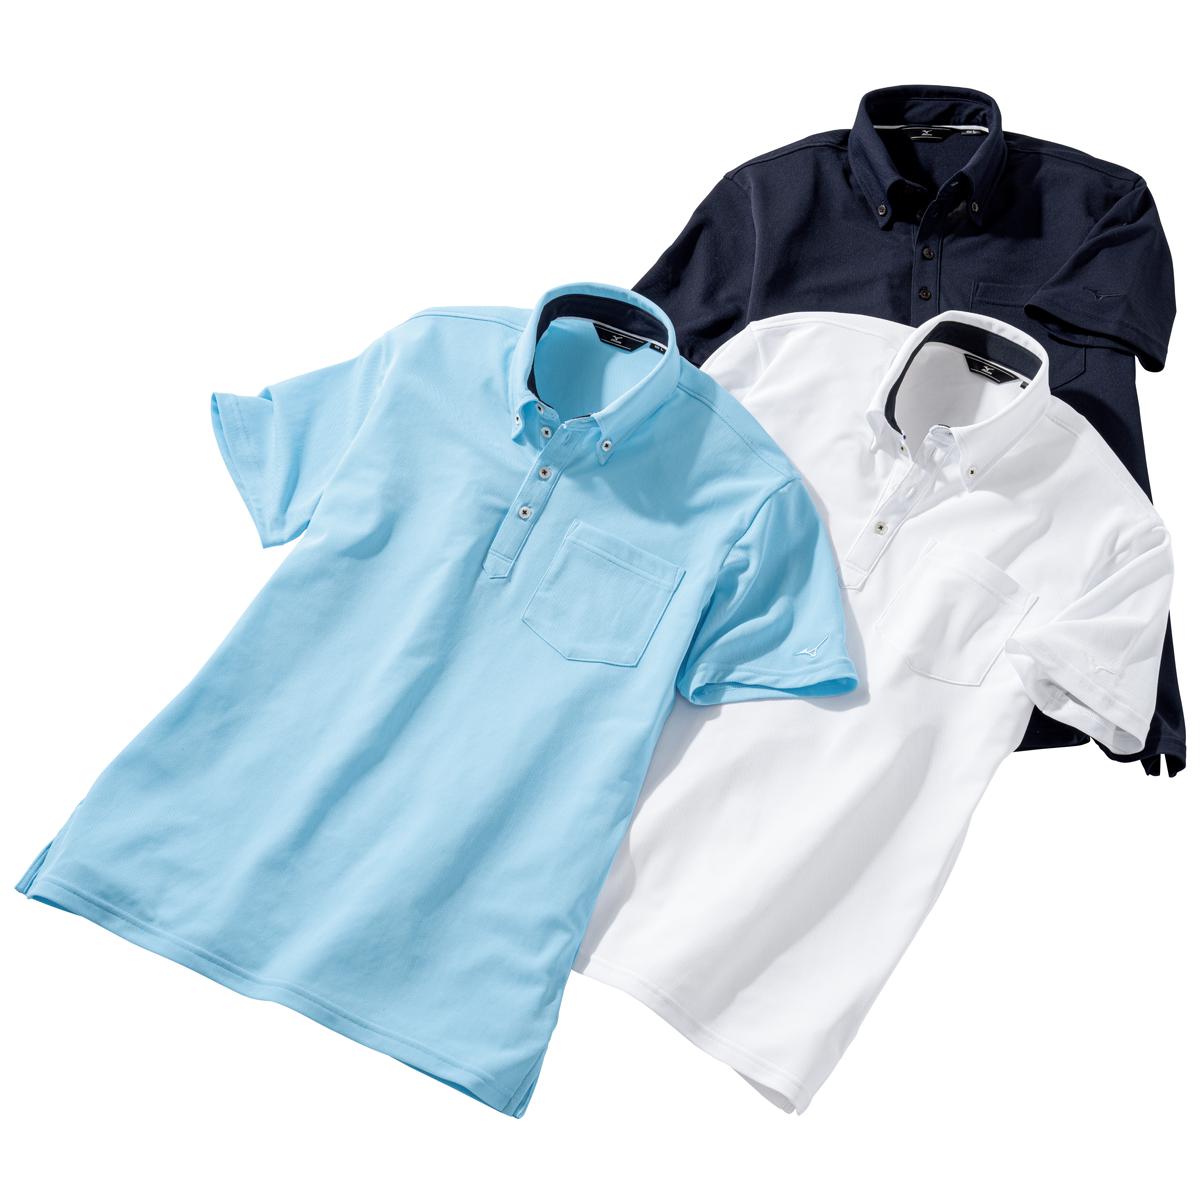 3枚組ソーラーカットポロシャツ(ミズノ)(吸汗速乾・UVカット・遮熱